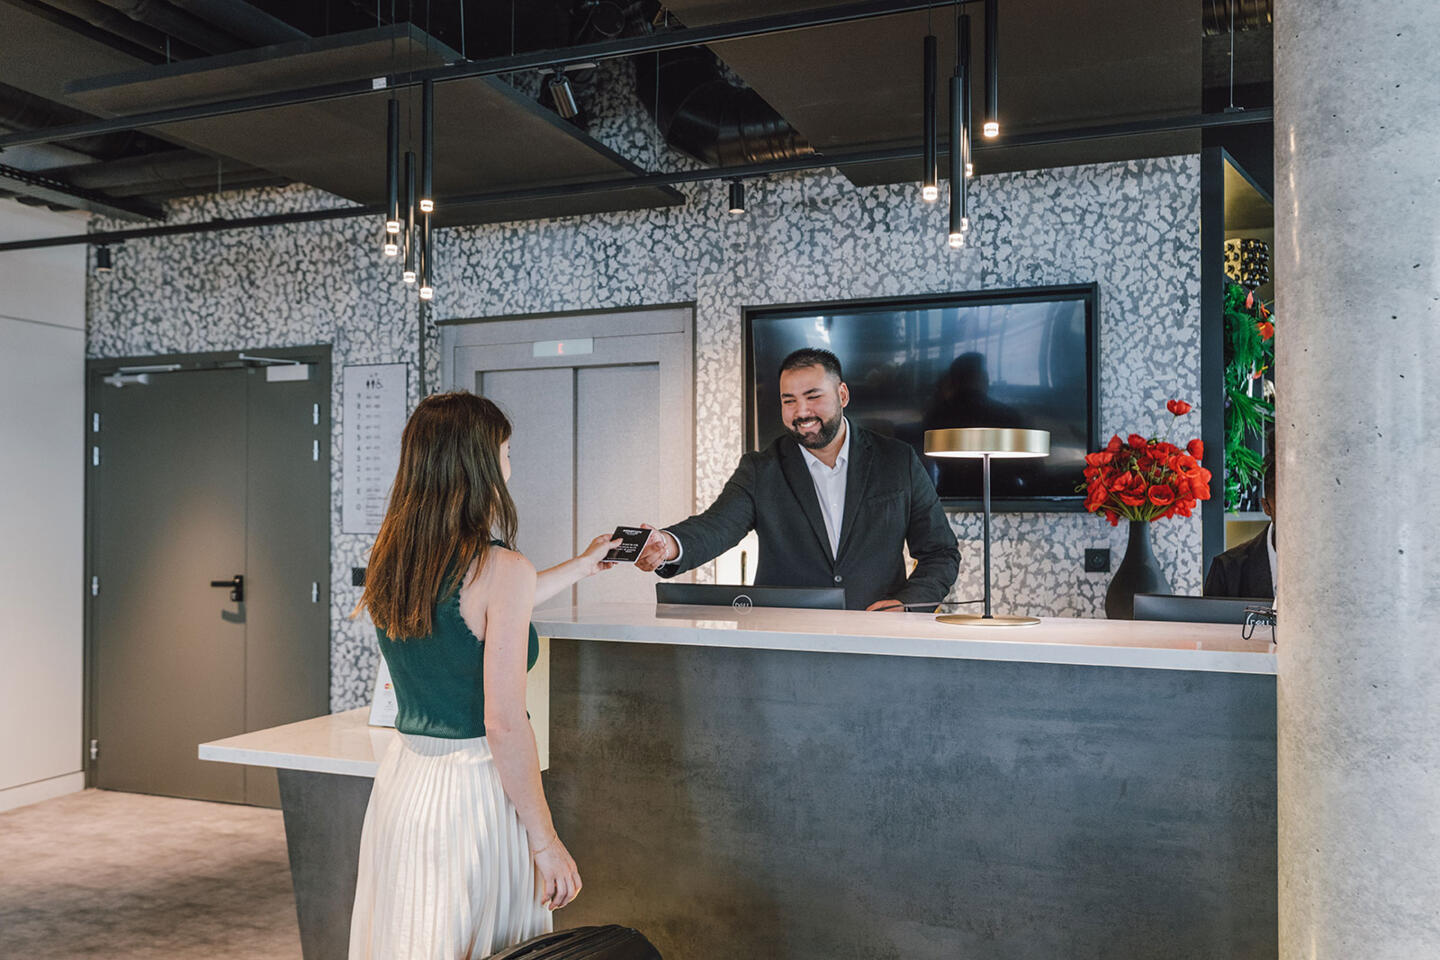 Réceptionniste masculin en costume remettant une carte de chambre à une cliente aux cheveux longs dans un hall d'accueil éclairé et design d'Appart'City, soulignant l'hospitalité et le confort d'appart'hôtels.